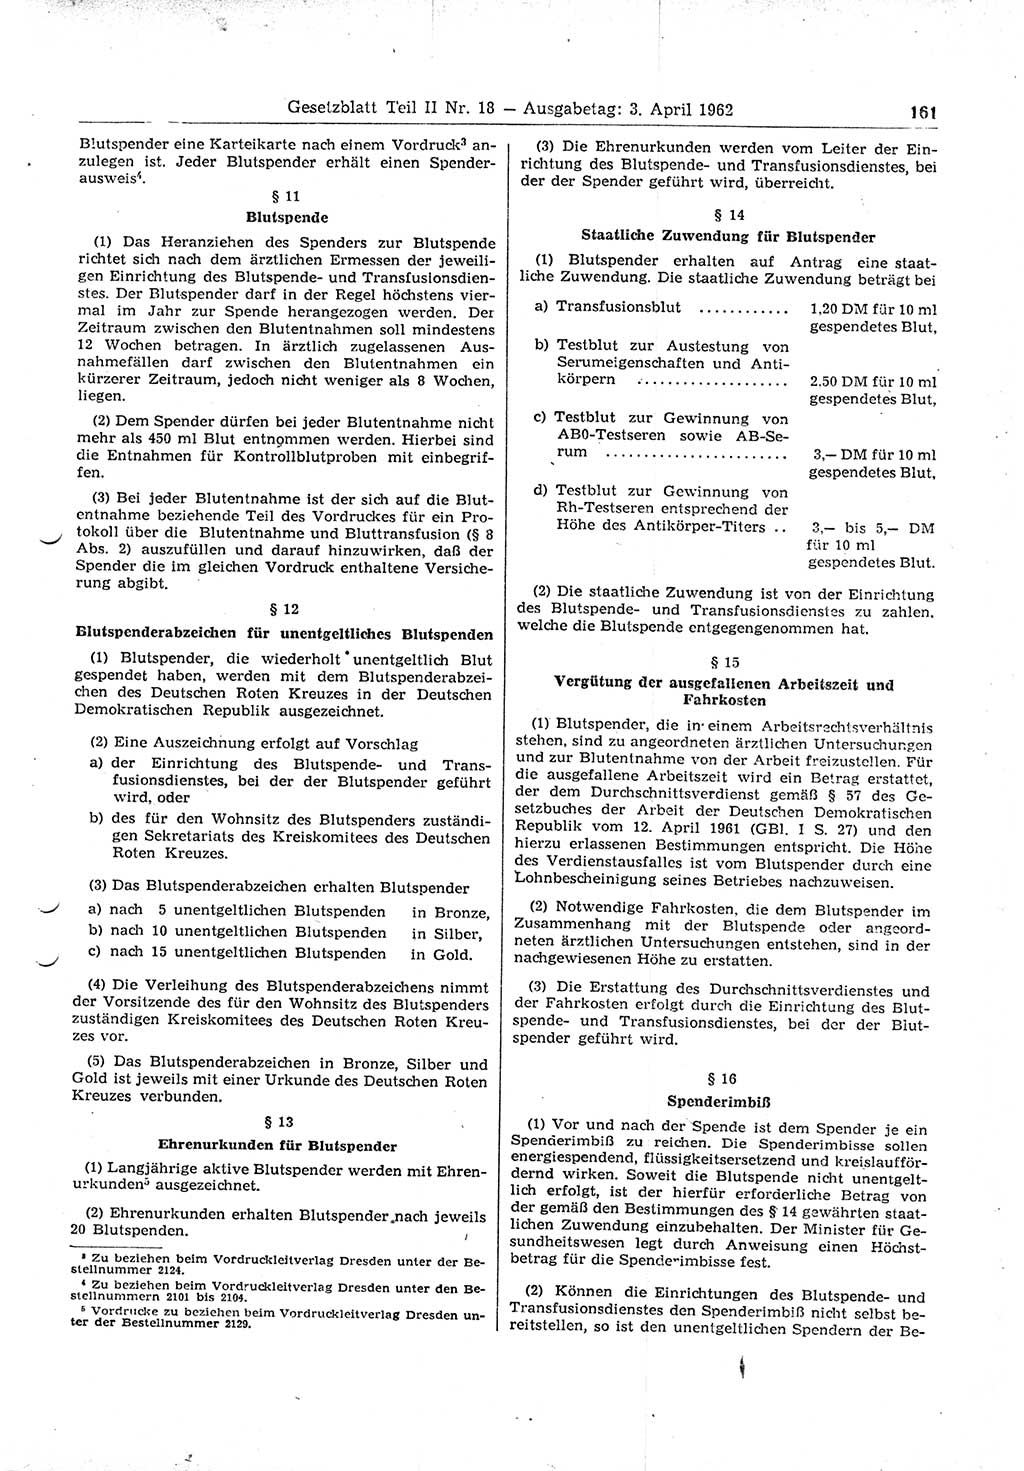 Gesetzblatt (GBl.) der Deutschen Demokratischen Republik (DDR) Teil ⅠⅠ 1962, Seite 161 (GBl. DDR ⅠⅠ 1962, S. 161)